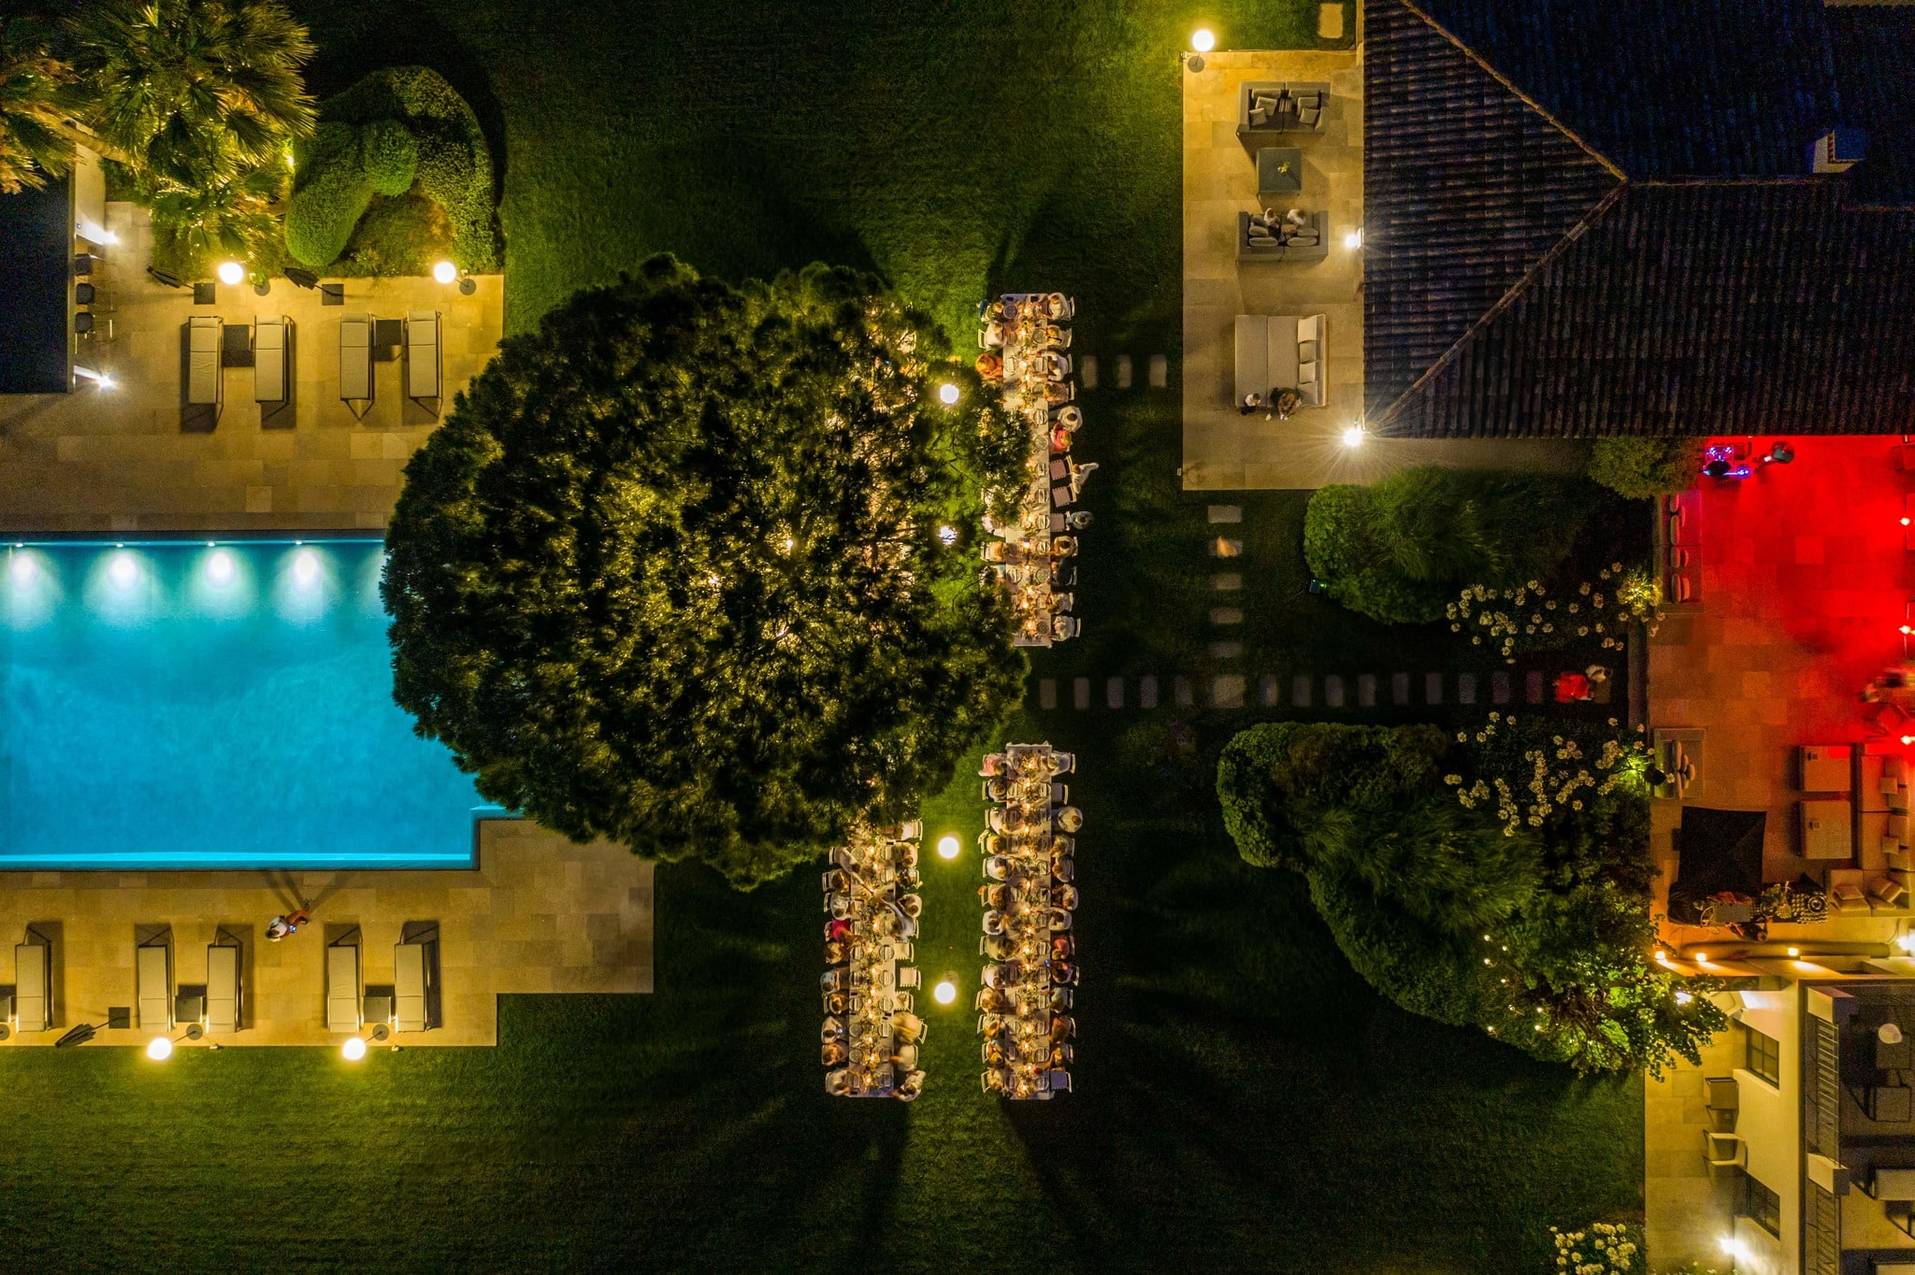 Vue aerienne d'un diner de mariage en exterieur entre la maison familiale et la piscine